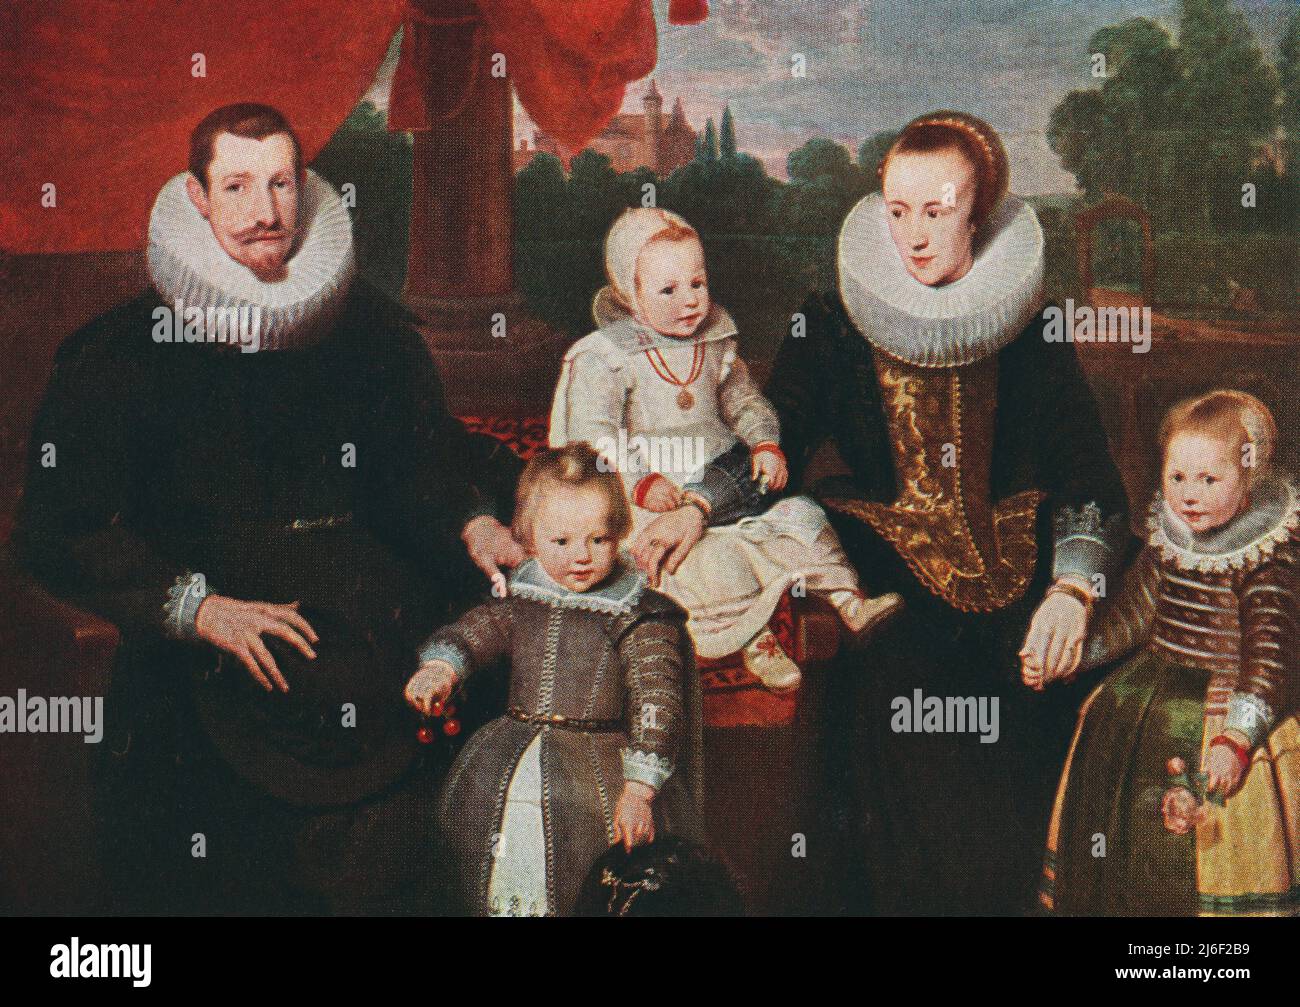 Philipp von Hutten, 1505 – 1546. Deutscher Abenteurer und ein früher europäischer Entdecker Venezuelas, hier mit seiner Familie gesehen. Aus Modes and Manners, veröffentlicht 1935 Stockfoto